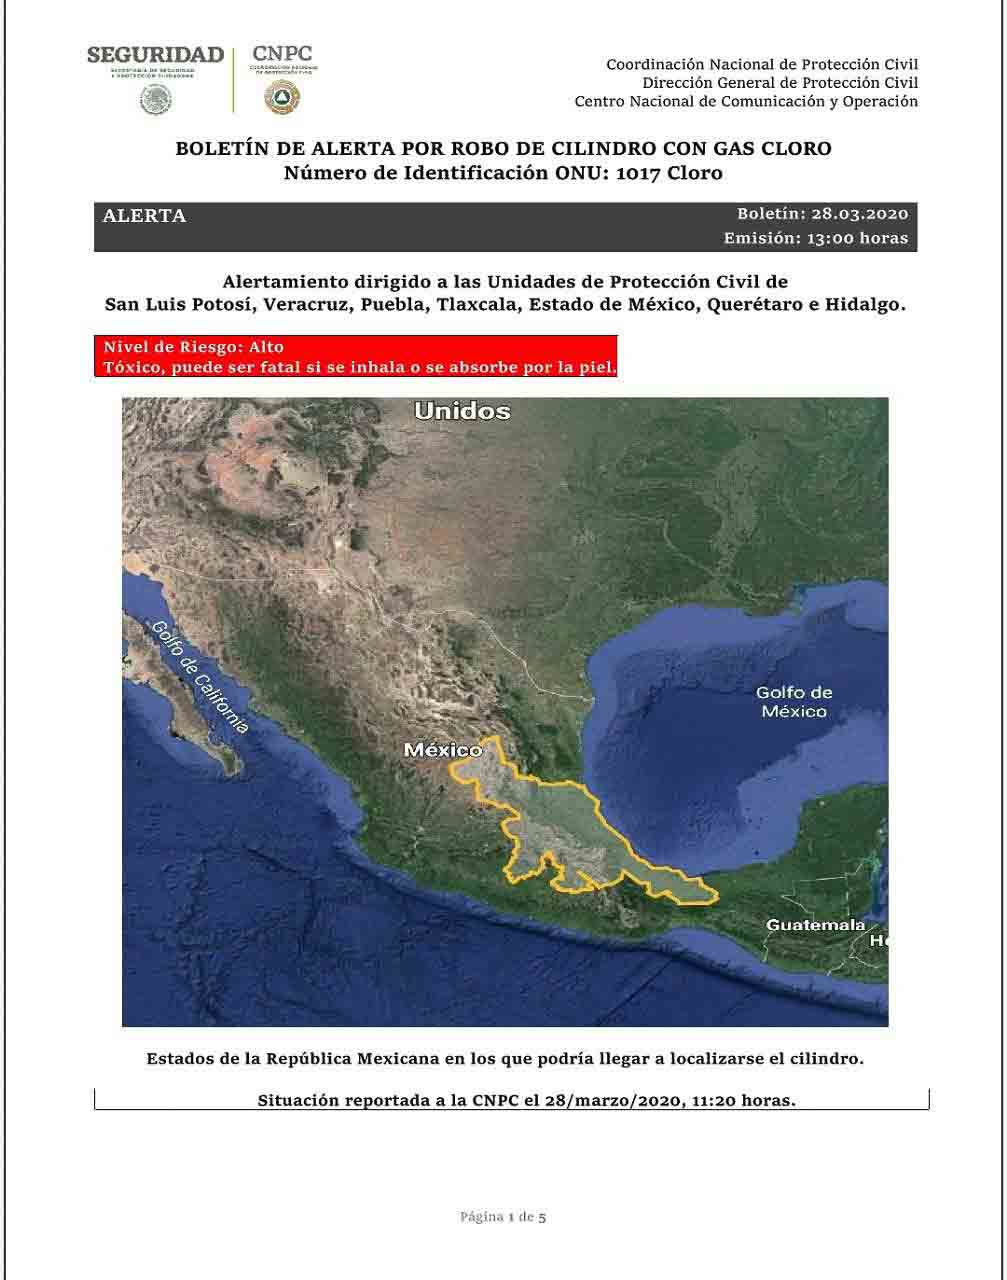 CNPC alerta a Veracruz y 6 estados mas por robo de tanques con químico tóxico de gas cloro